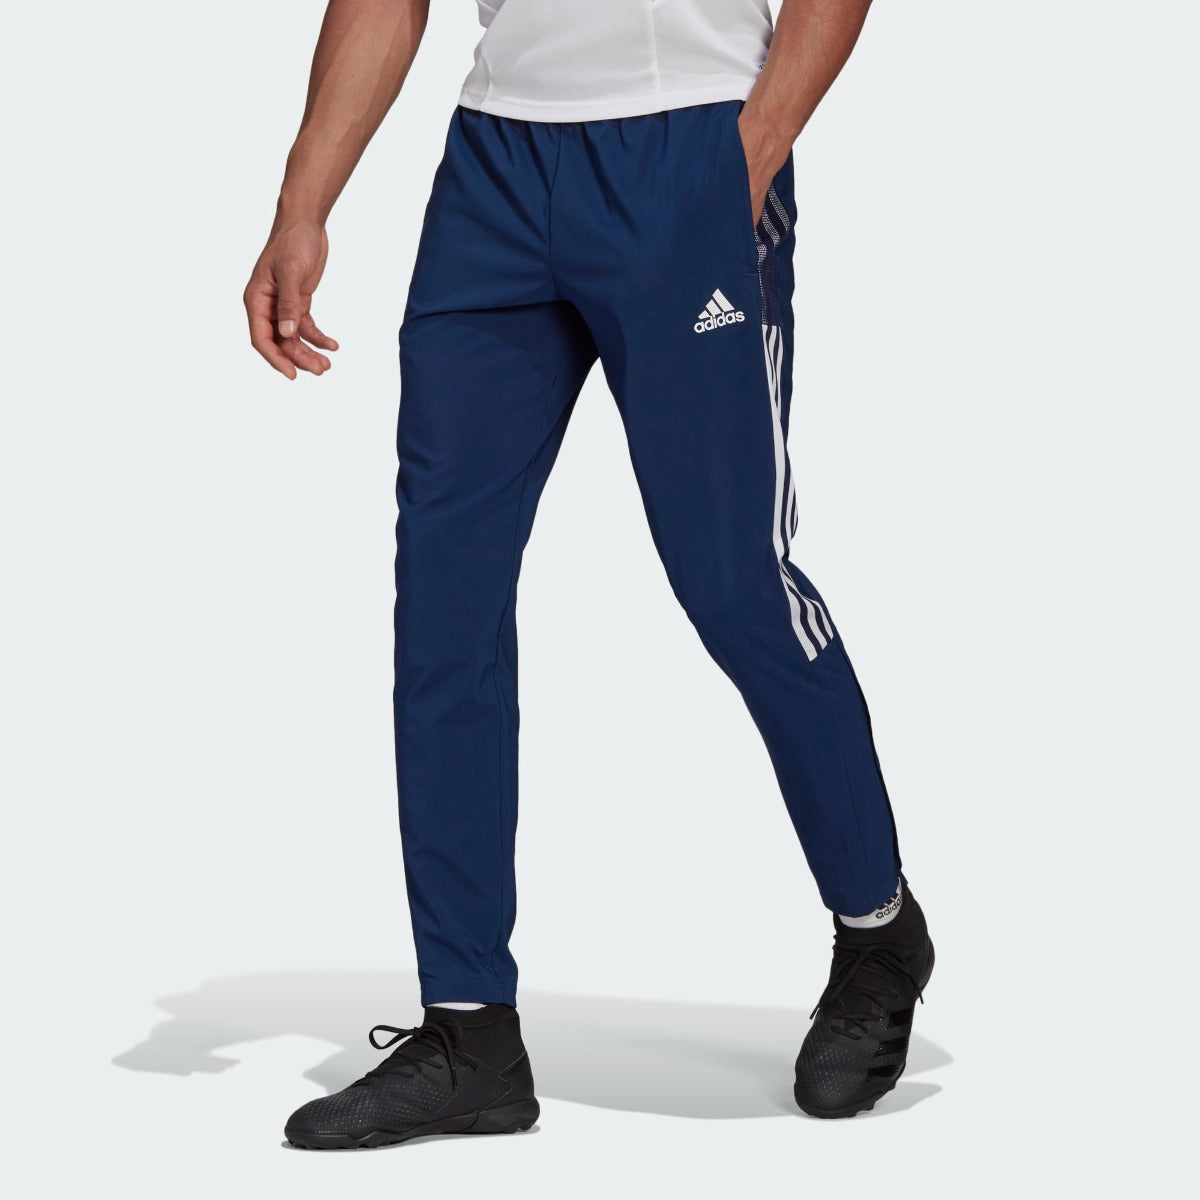 Pantaloni della tuta Adidas Tiro - Blu/Bianco